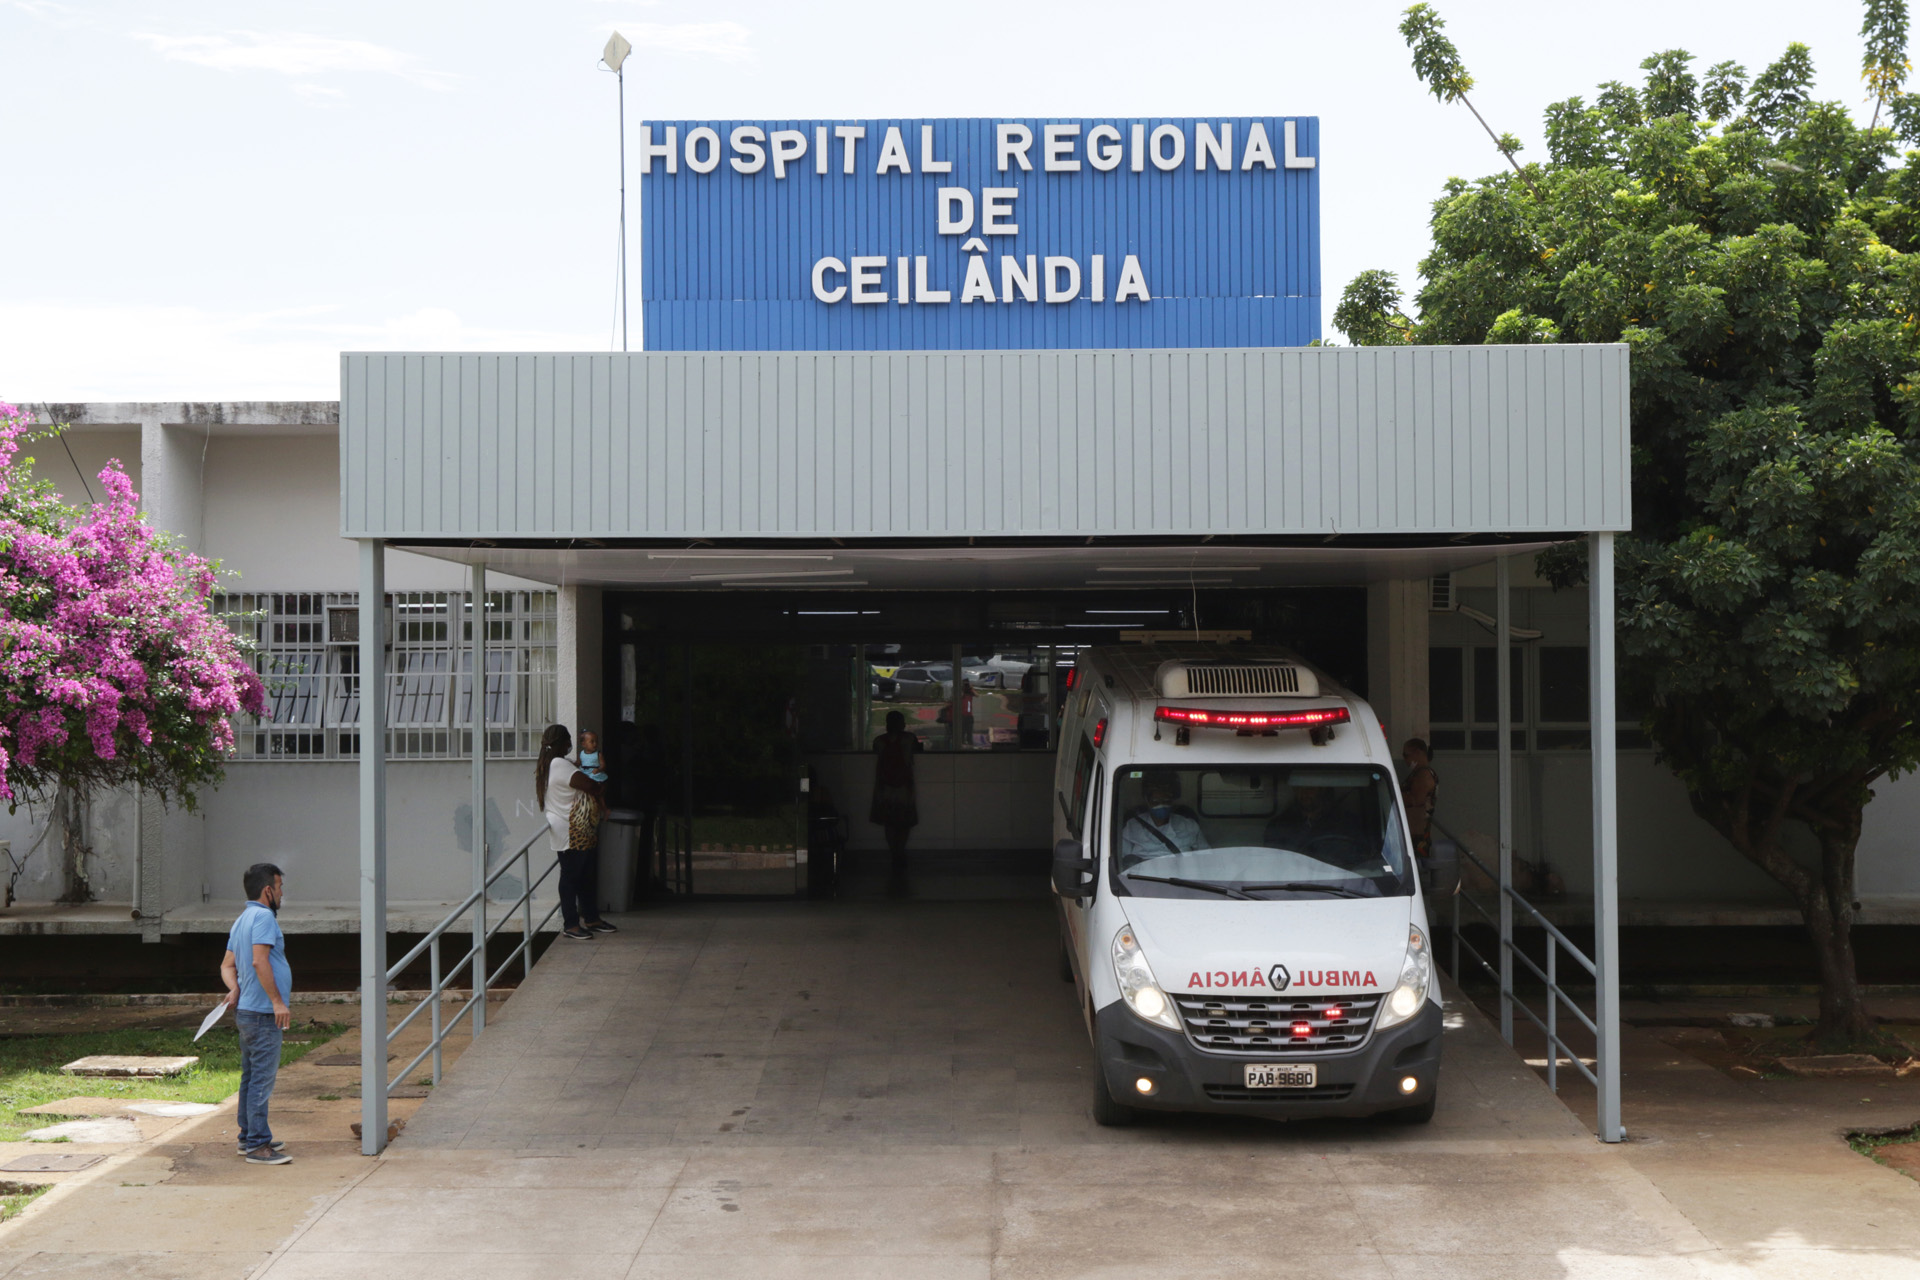 O-Hospital-Regional-de-Ceilandia-foi-inaugurado-em-1981-e-ao-longo-dos-seus-41-anos-o-pronto-socorro-nao-passou-por-reforma-ou-reestruturacao.-Foto-Sandro-Araujo-Agencia-Saude-DF.jpg